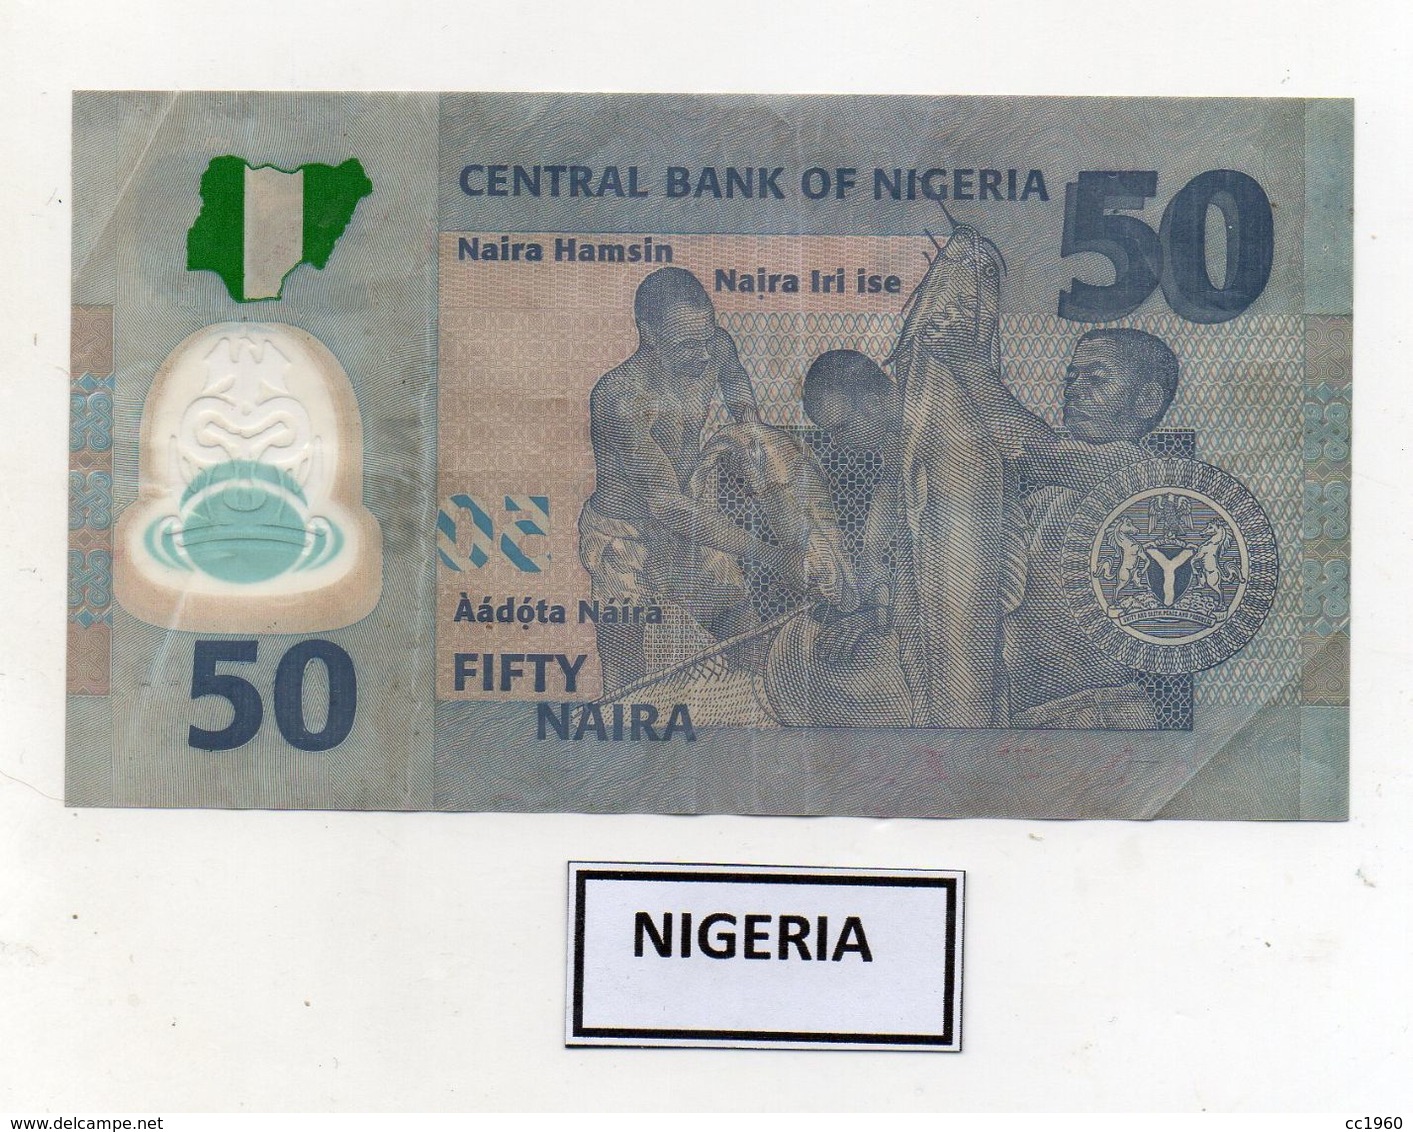 NIGERIA - 2011 - Banconota Da 50 Naira -  In Polimero - Usata - (FDC7811) - Nigeria